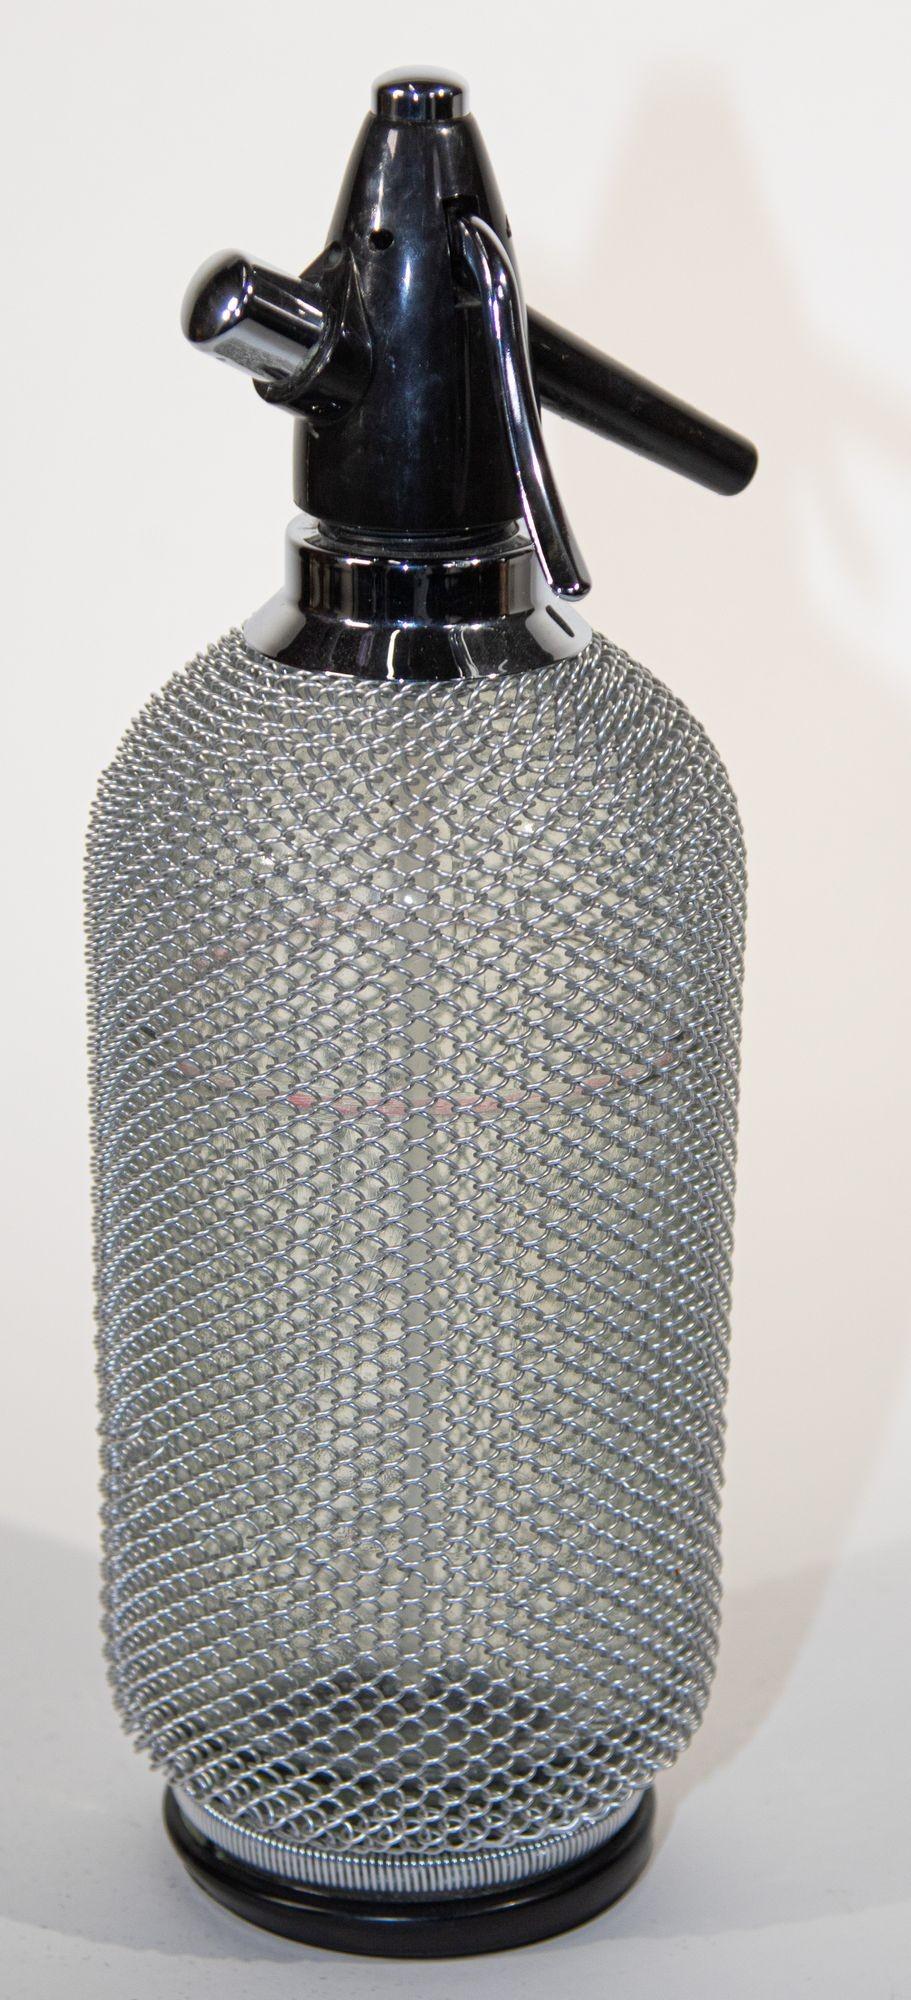 Vintage Classic Siphon Soda Seltzer Glass Bottle with Wire Mesh.
Il s'agit d'une fantastique bouteille d'eau de Seltz vintage avec une enveloppe en treillis métallique autour du verre.
Bouteille d'eau de Seltz vintage fabriquée en